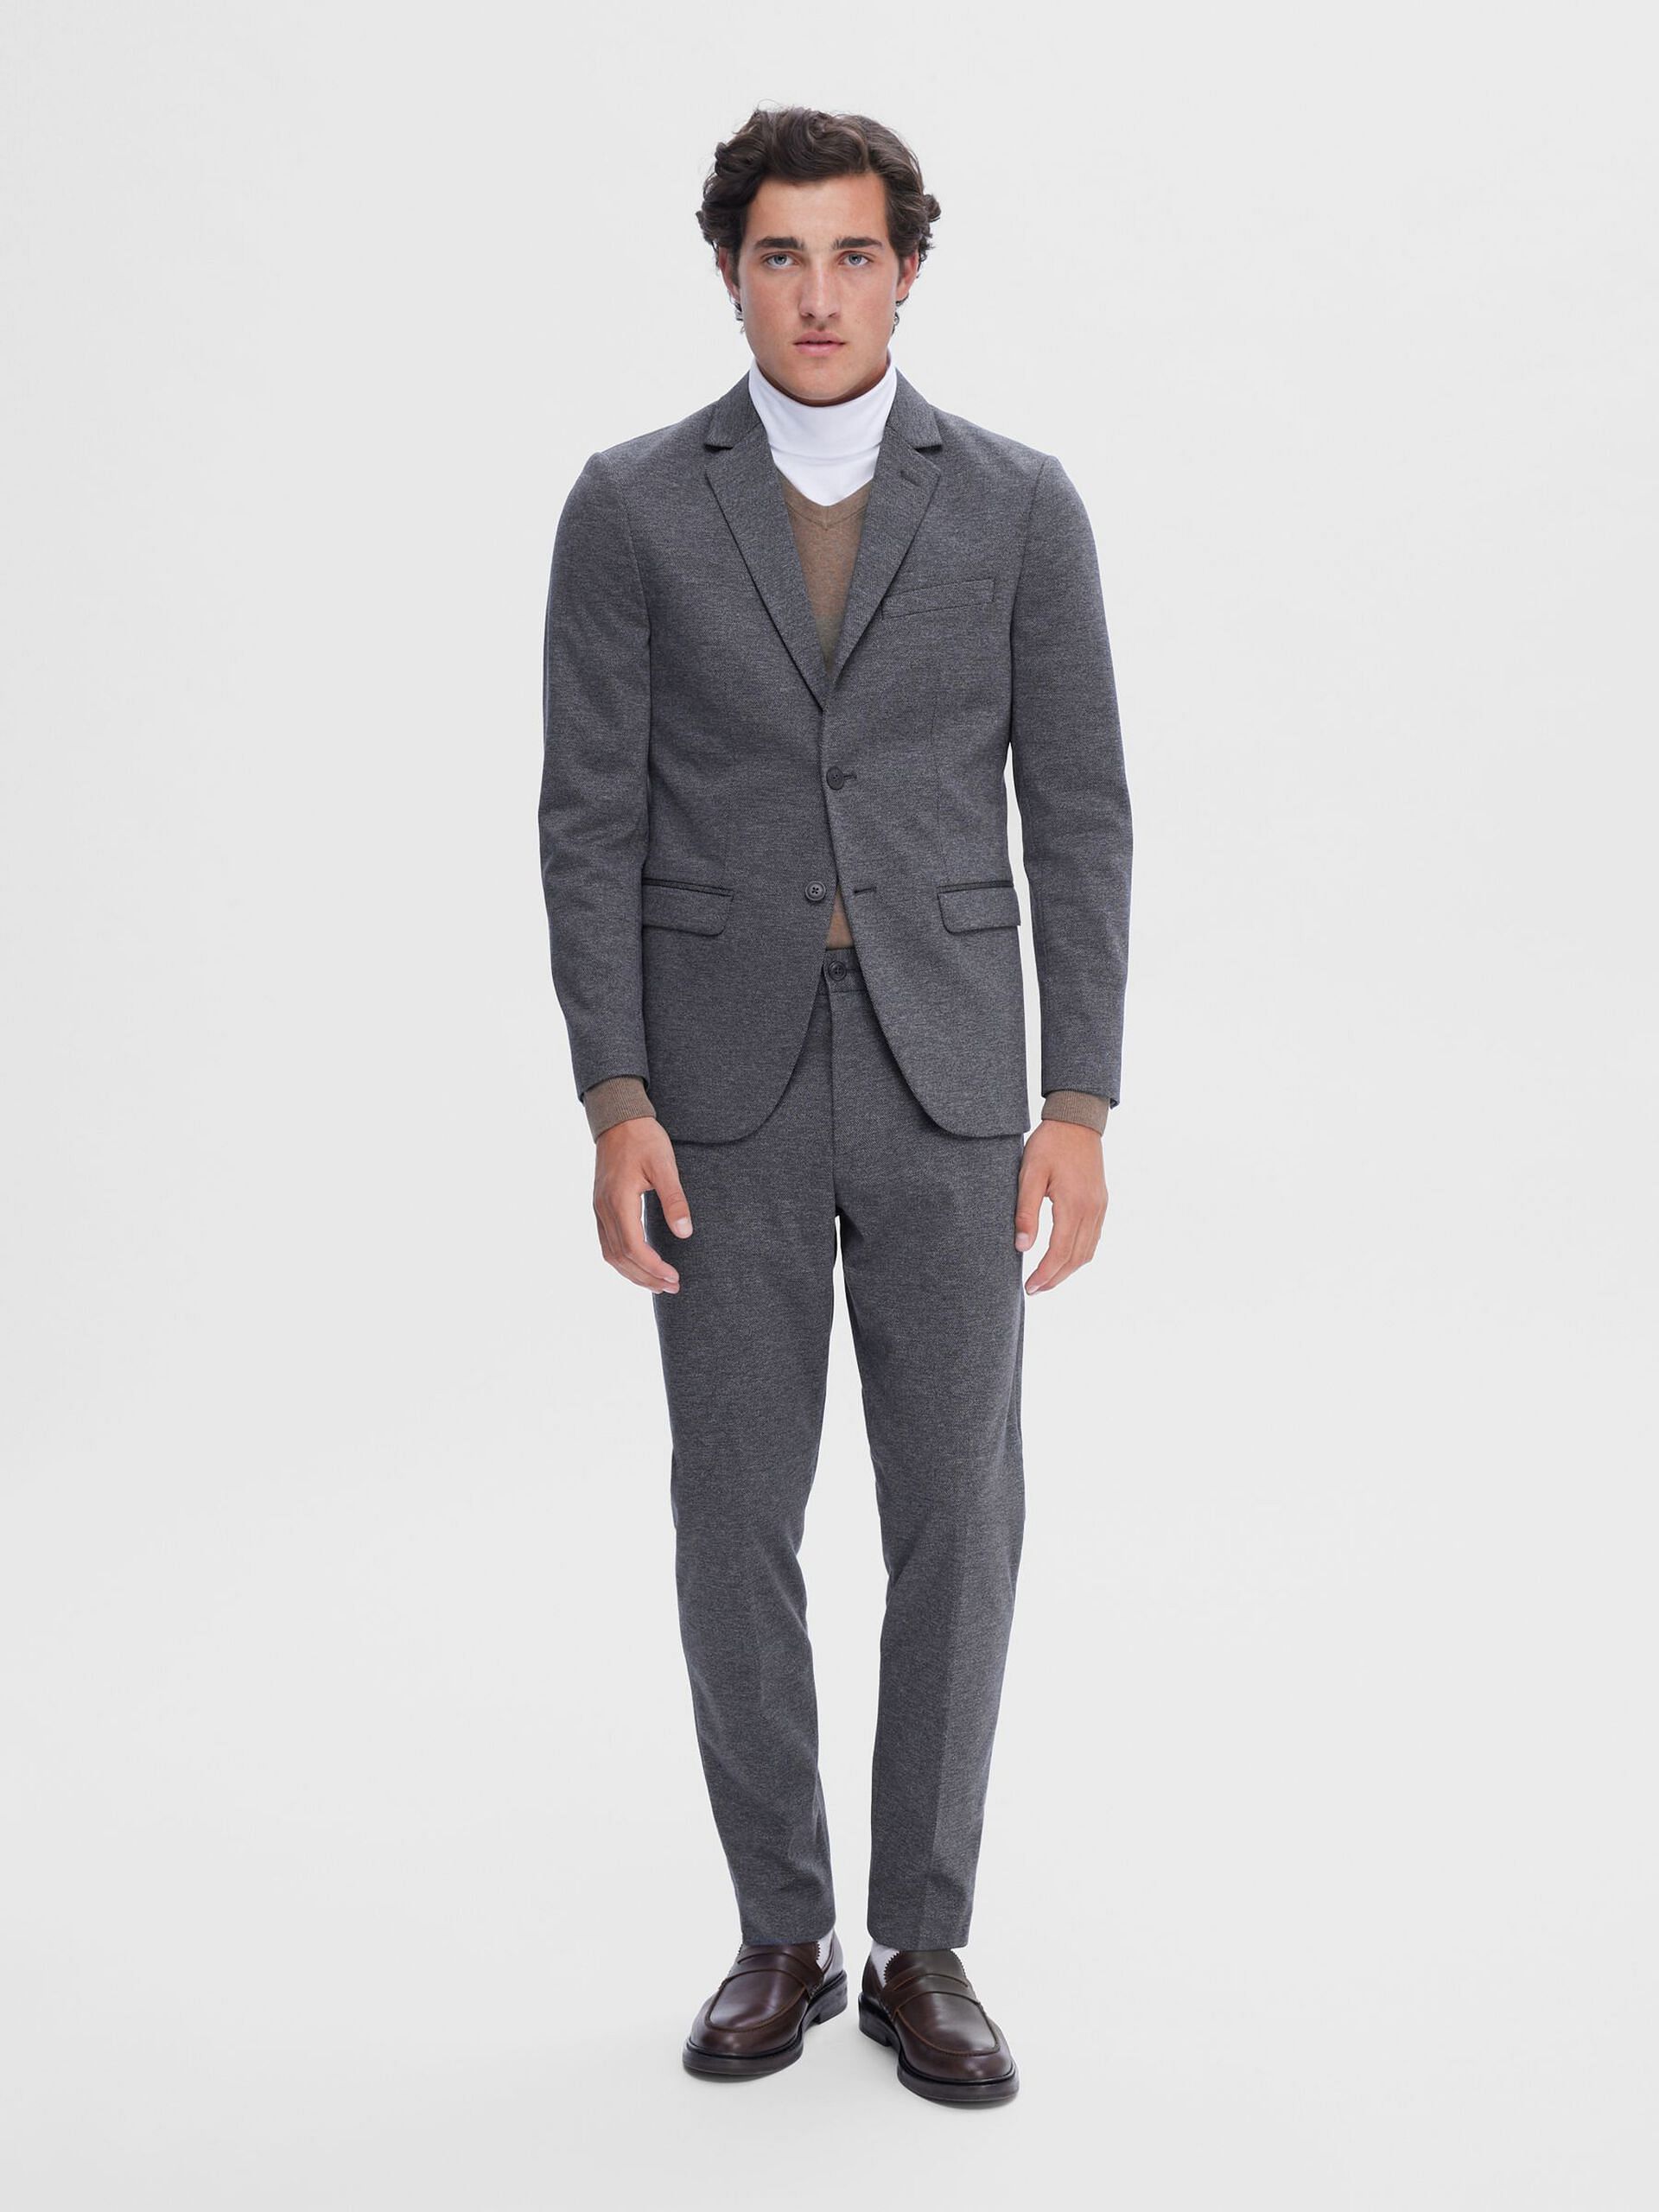 H&M Slim Fit Jersey Suit Pants | Hamilton Place